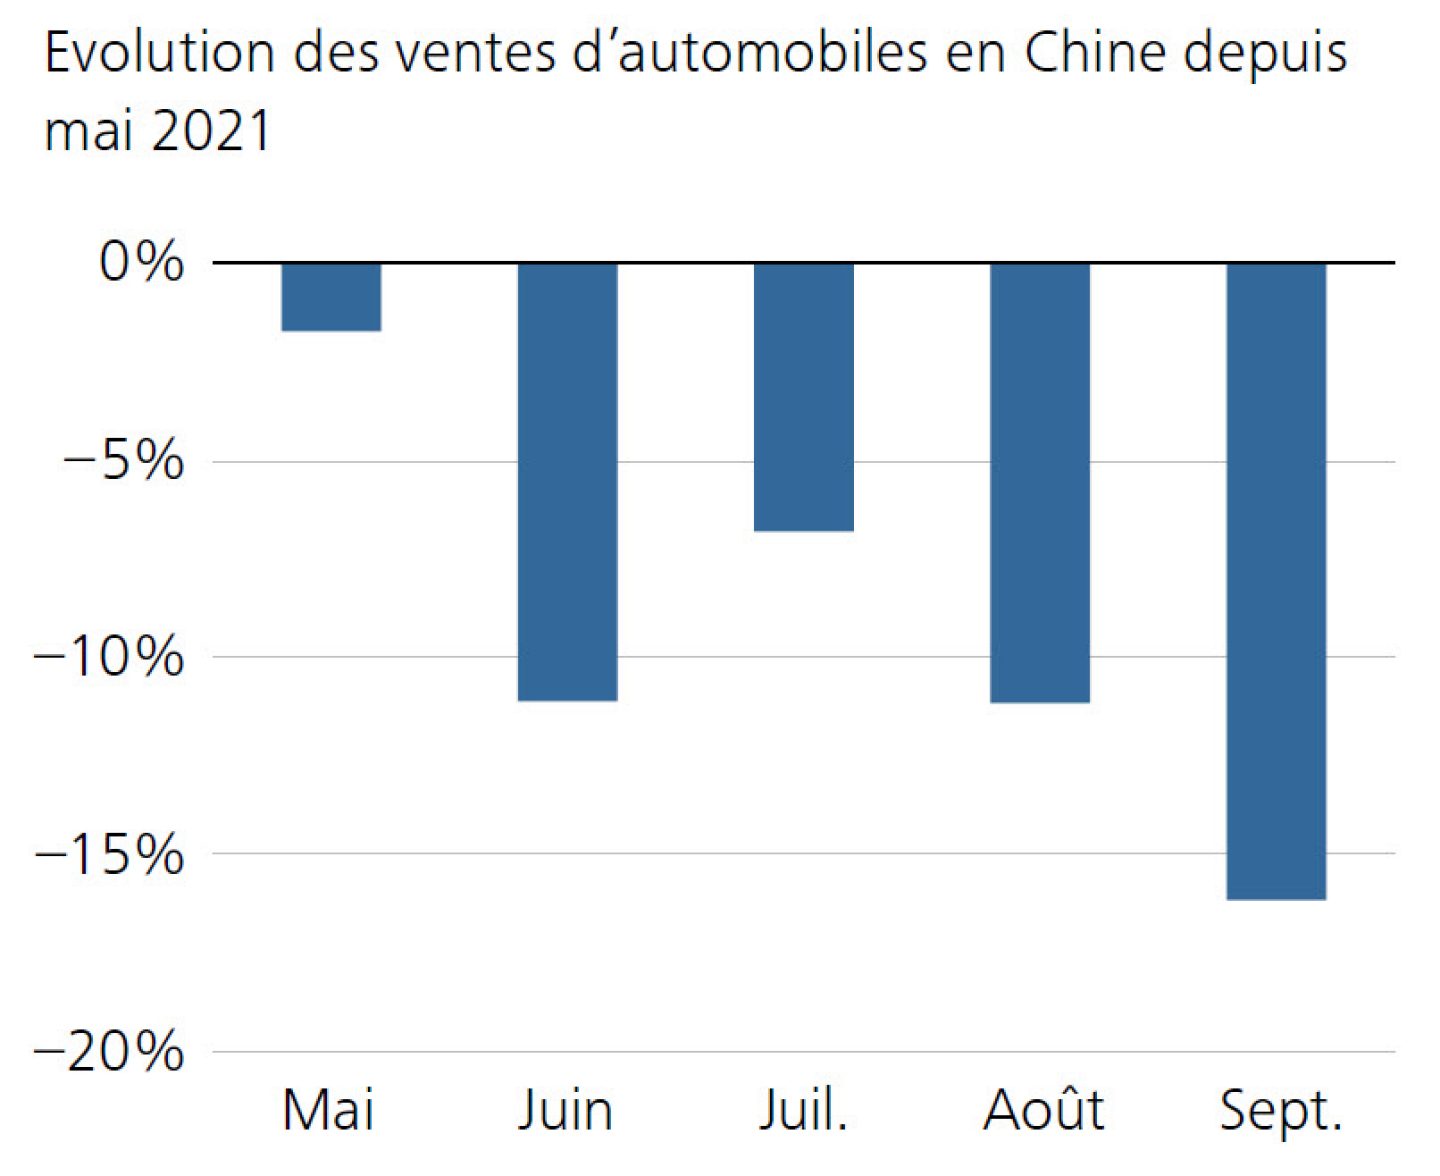 Evolution des ventes d’automobiles en Chine depuis mai 2021